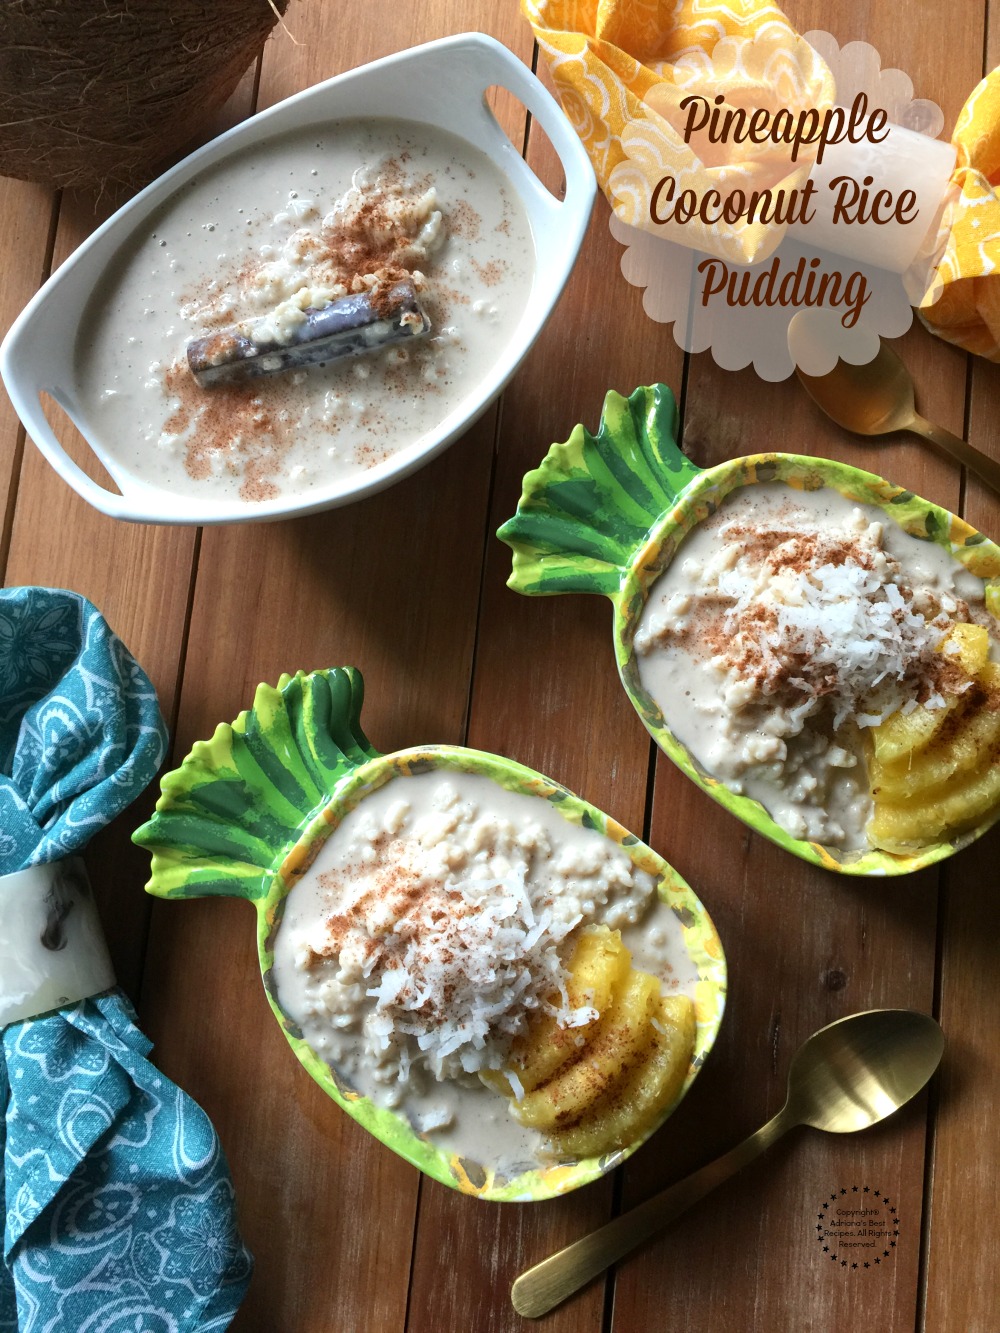 Delicioso arroz con leche coco y piña para celebrar las parrilladas del verano. Un postre clásico de la cocina Mexicana y latina.